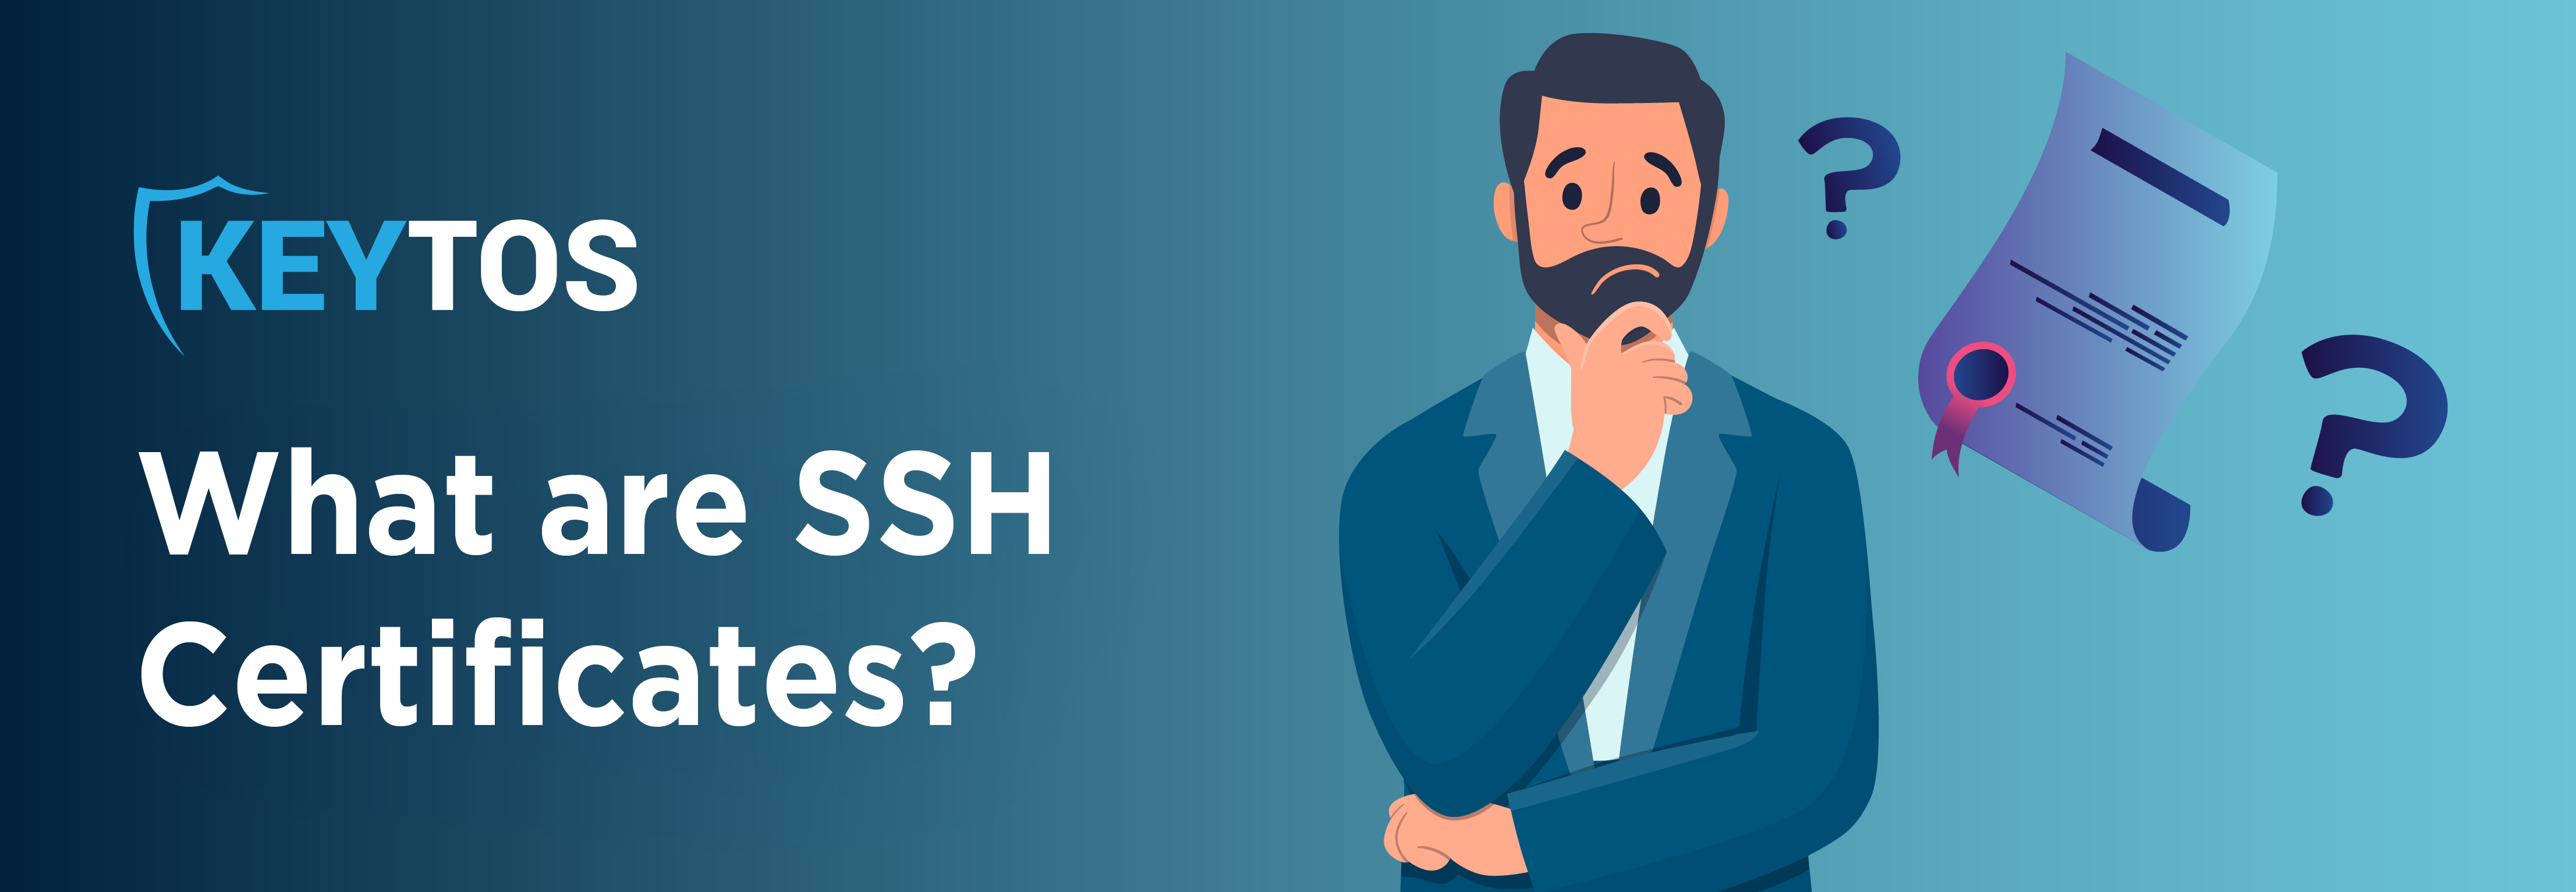 ¿Qué son los certificados SSH? Certificados SSH explicados.